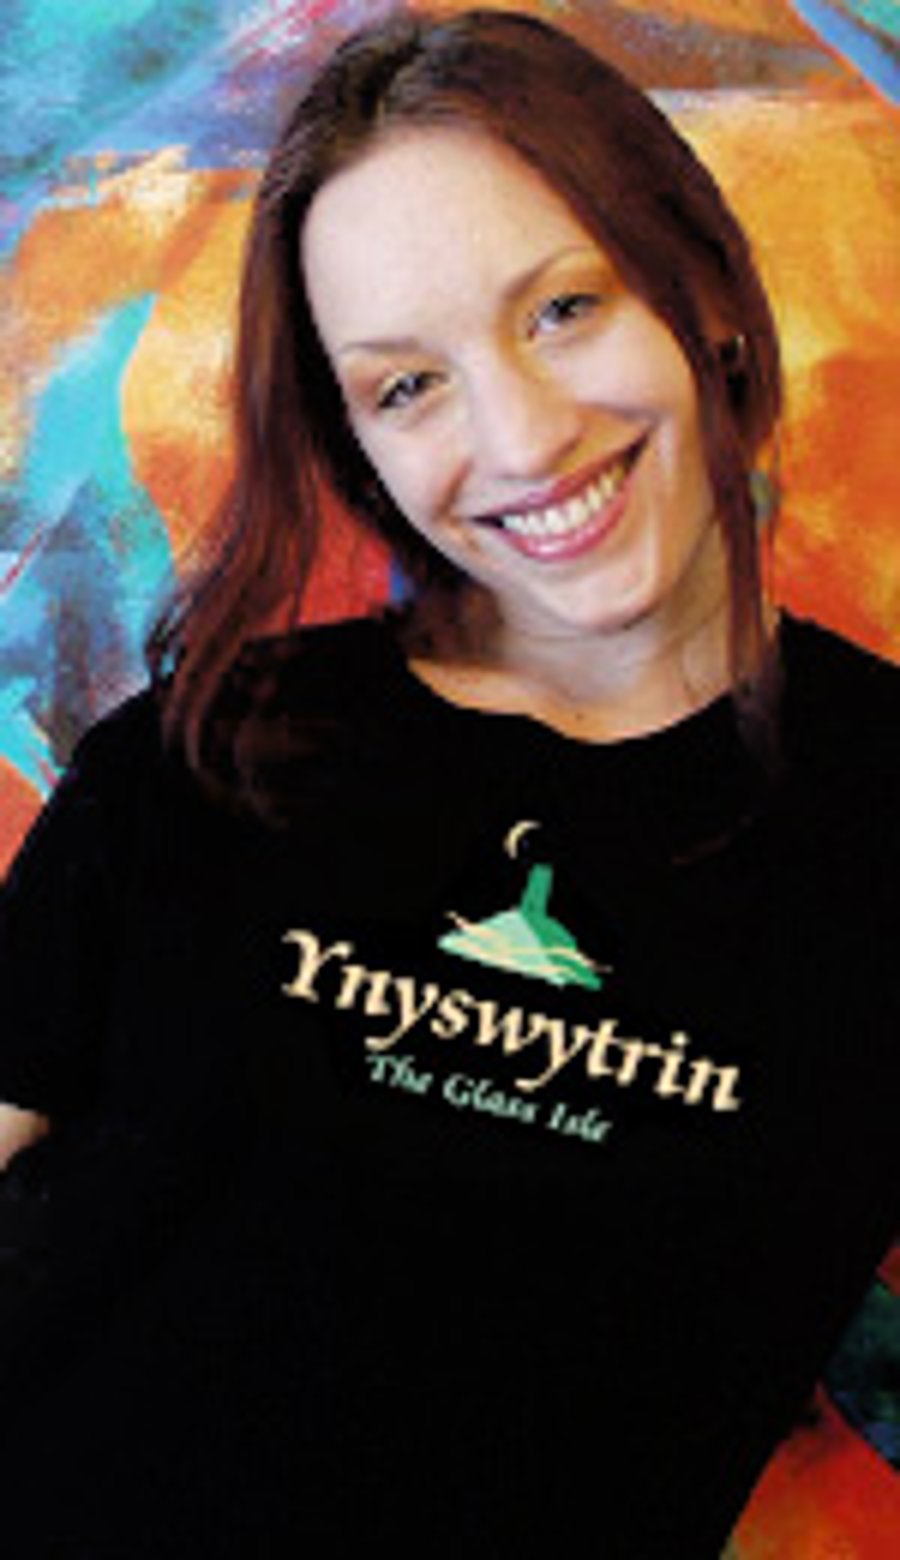 Womans Medium T shirt,Organic cotton fairwear (Ynyswytrin historic Glastonbury) 